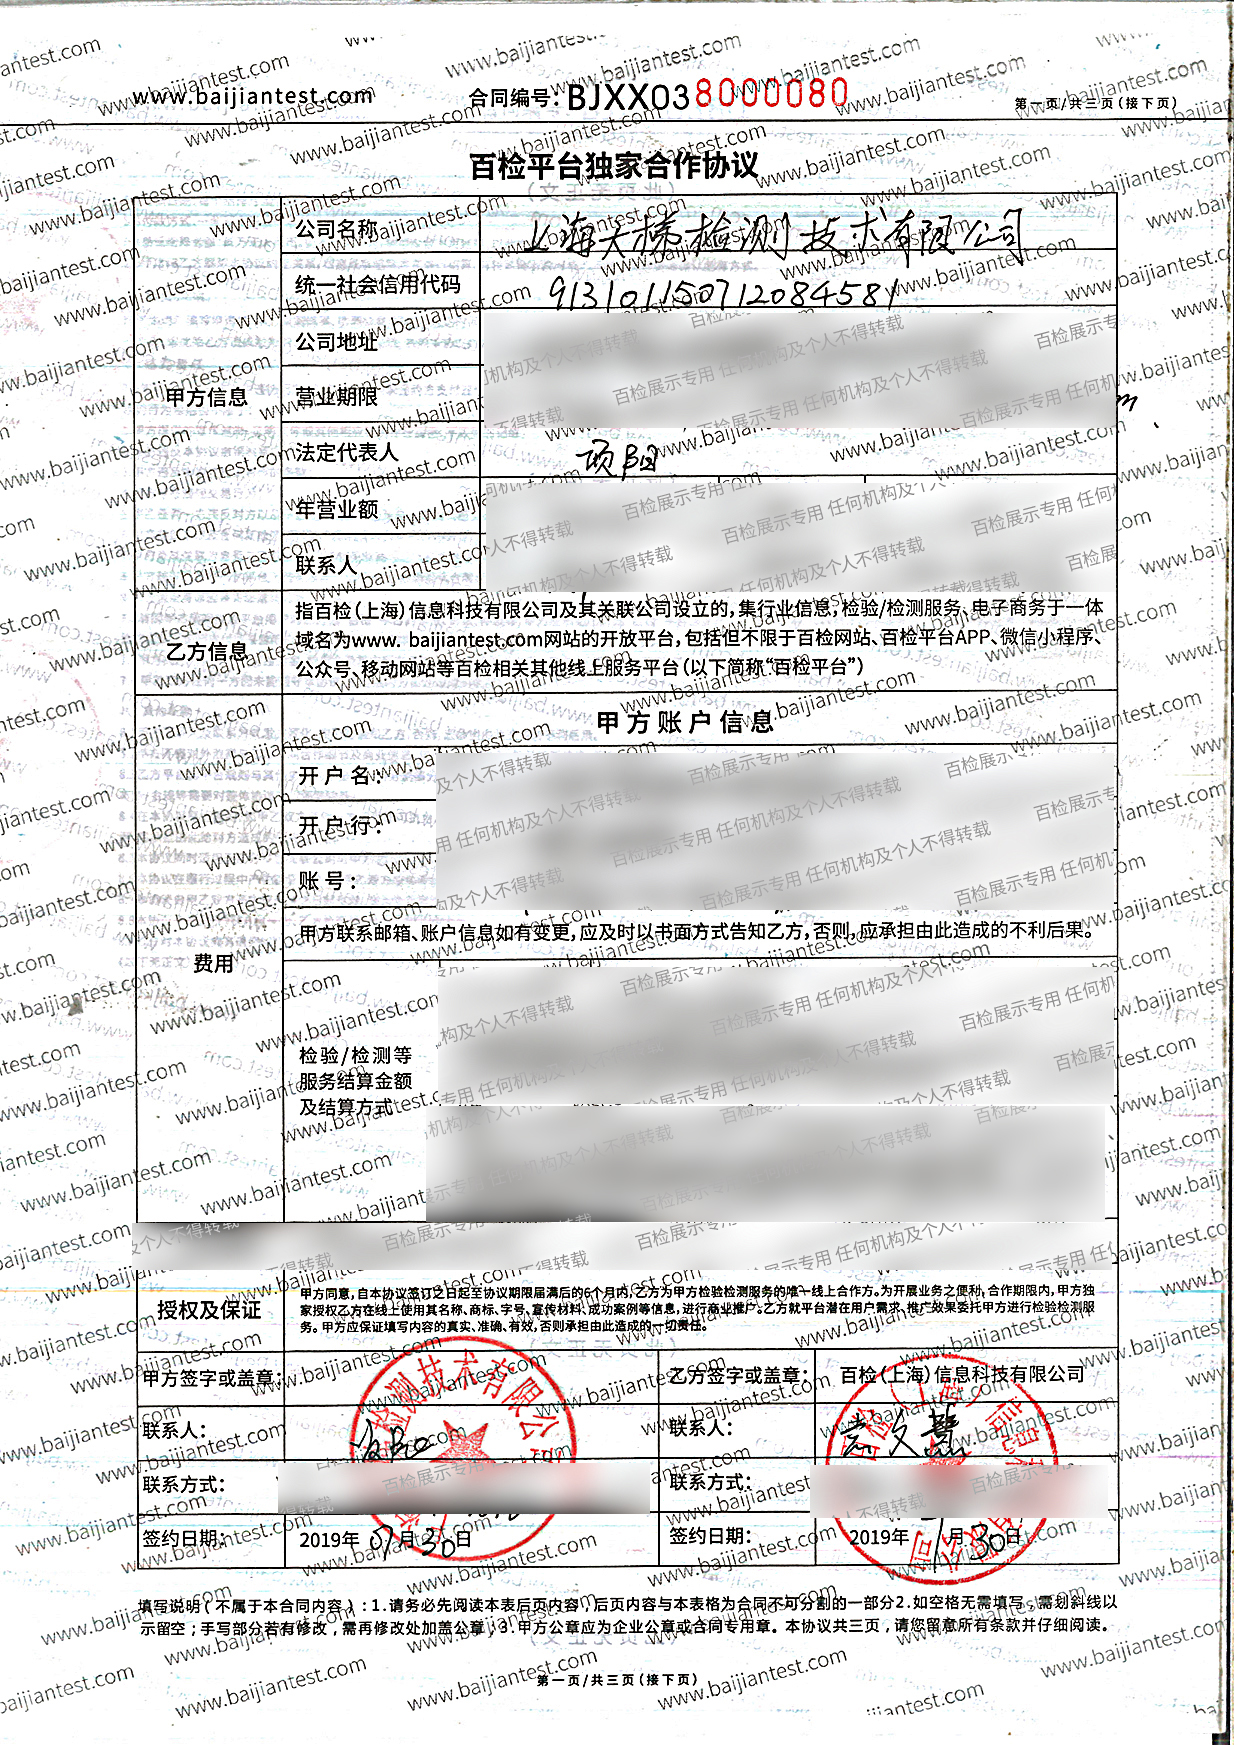 上海天梯检测技术有限公司